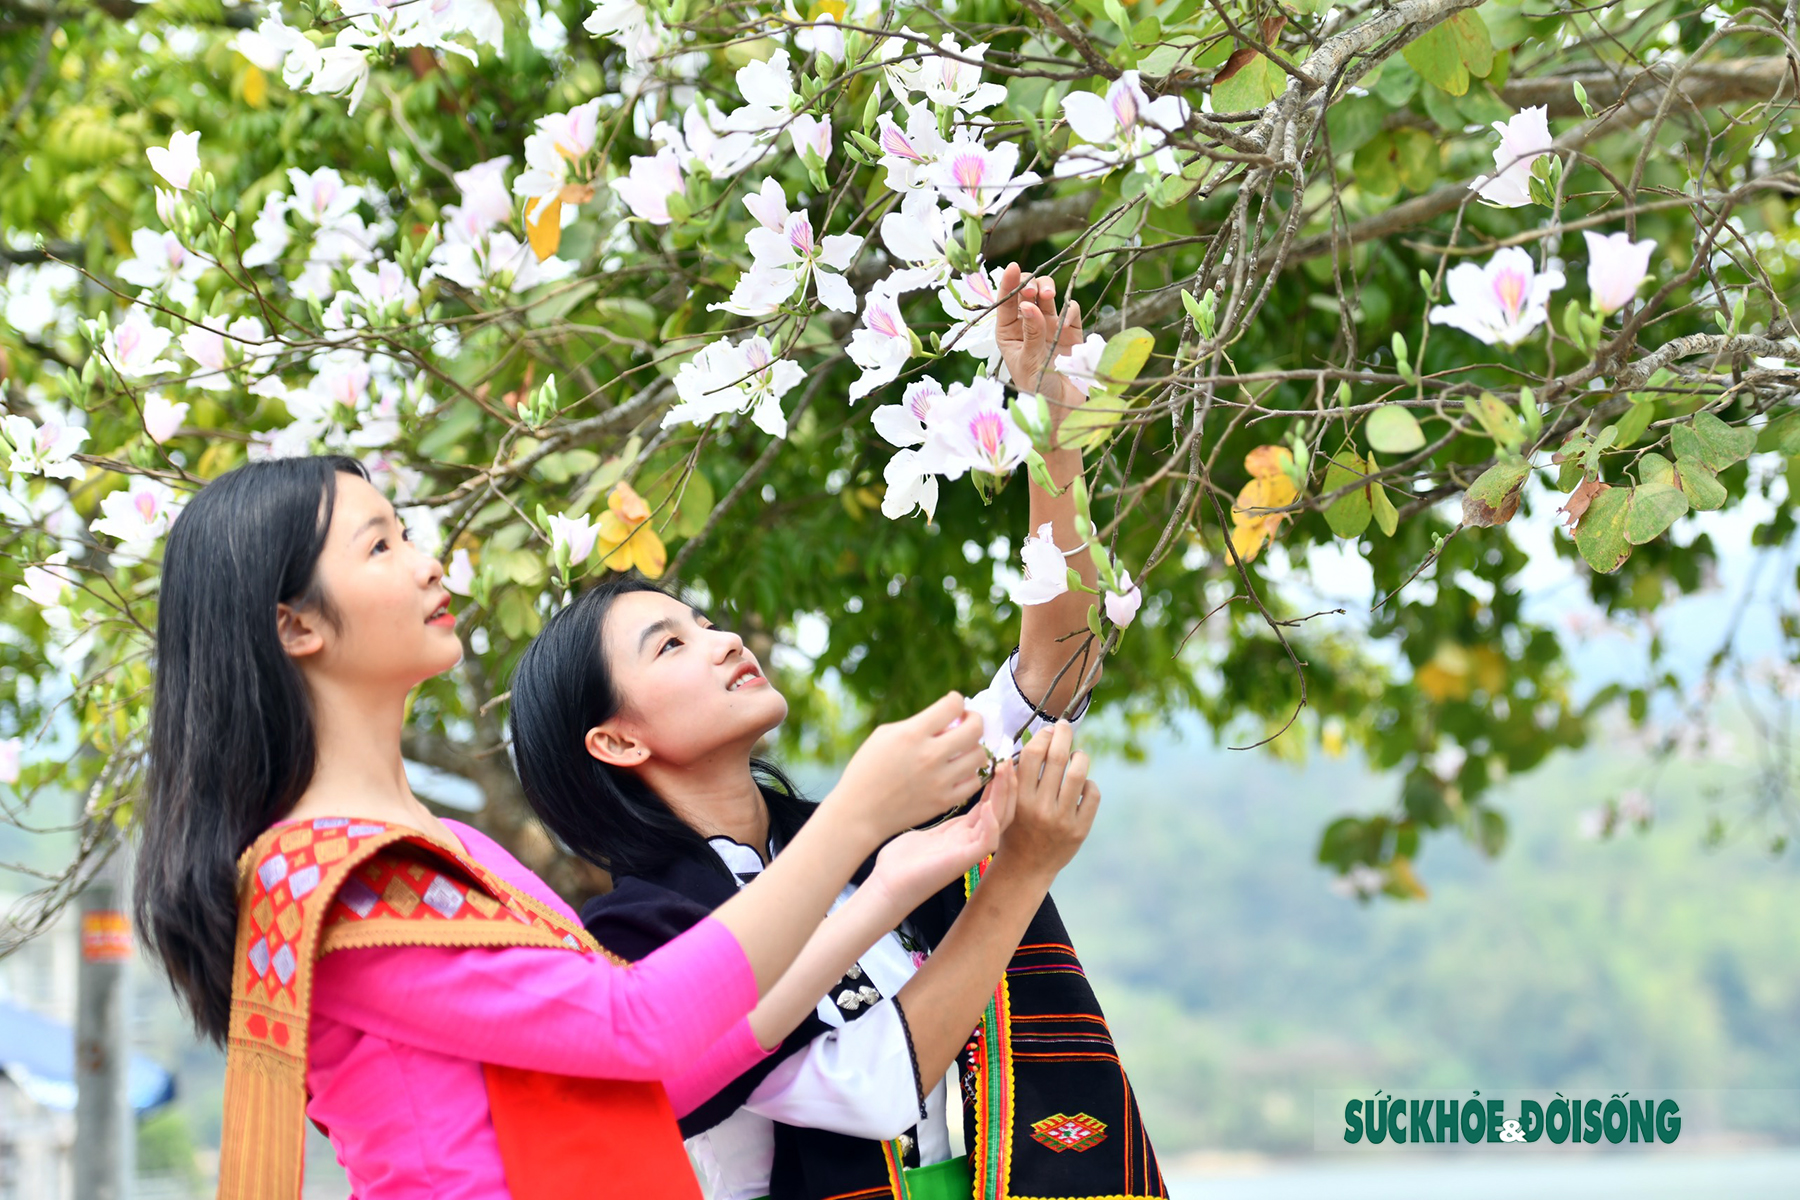 Thiếu nữ Thái ở Điện Biên dịu dàng giữa rừng hoa ban tuyệt đẹp - Ảnh 3.